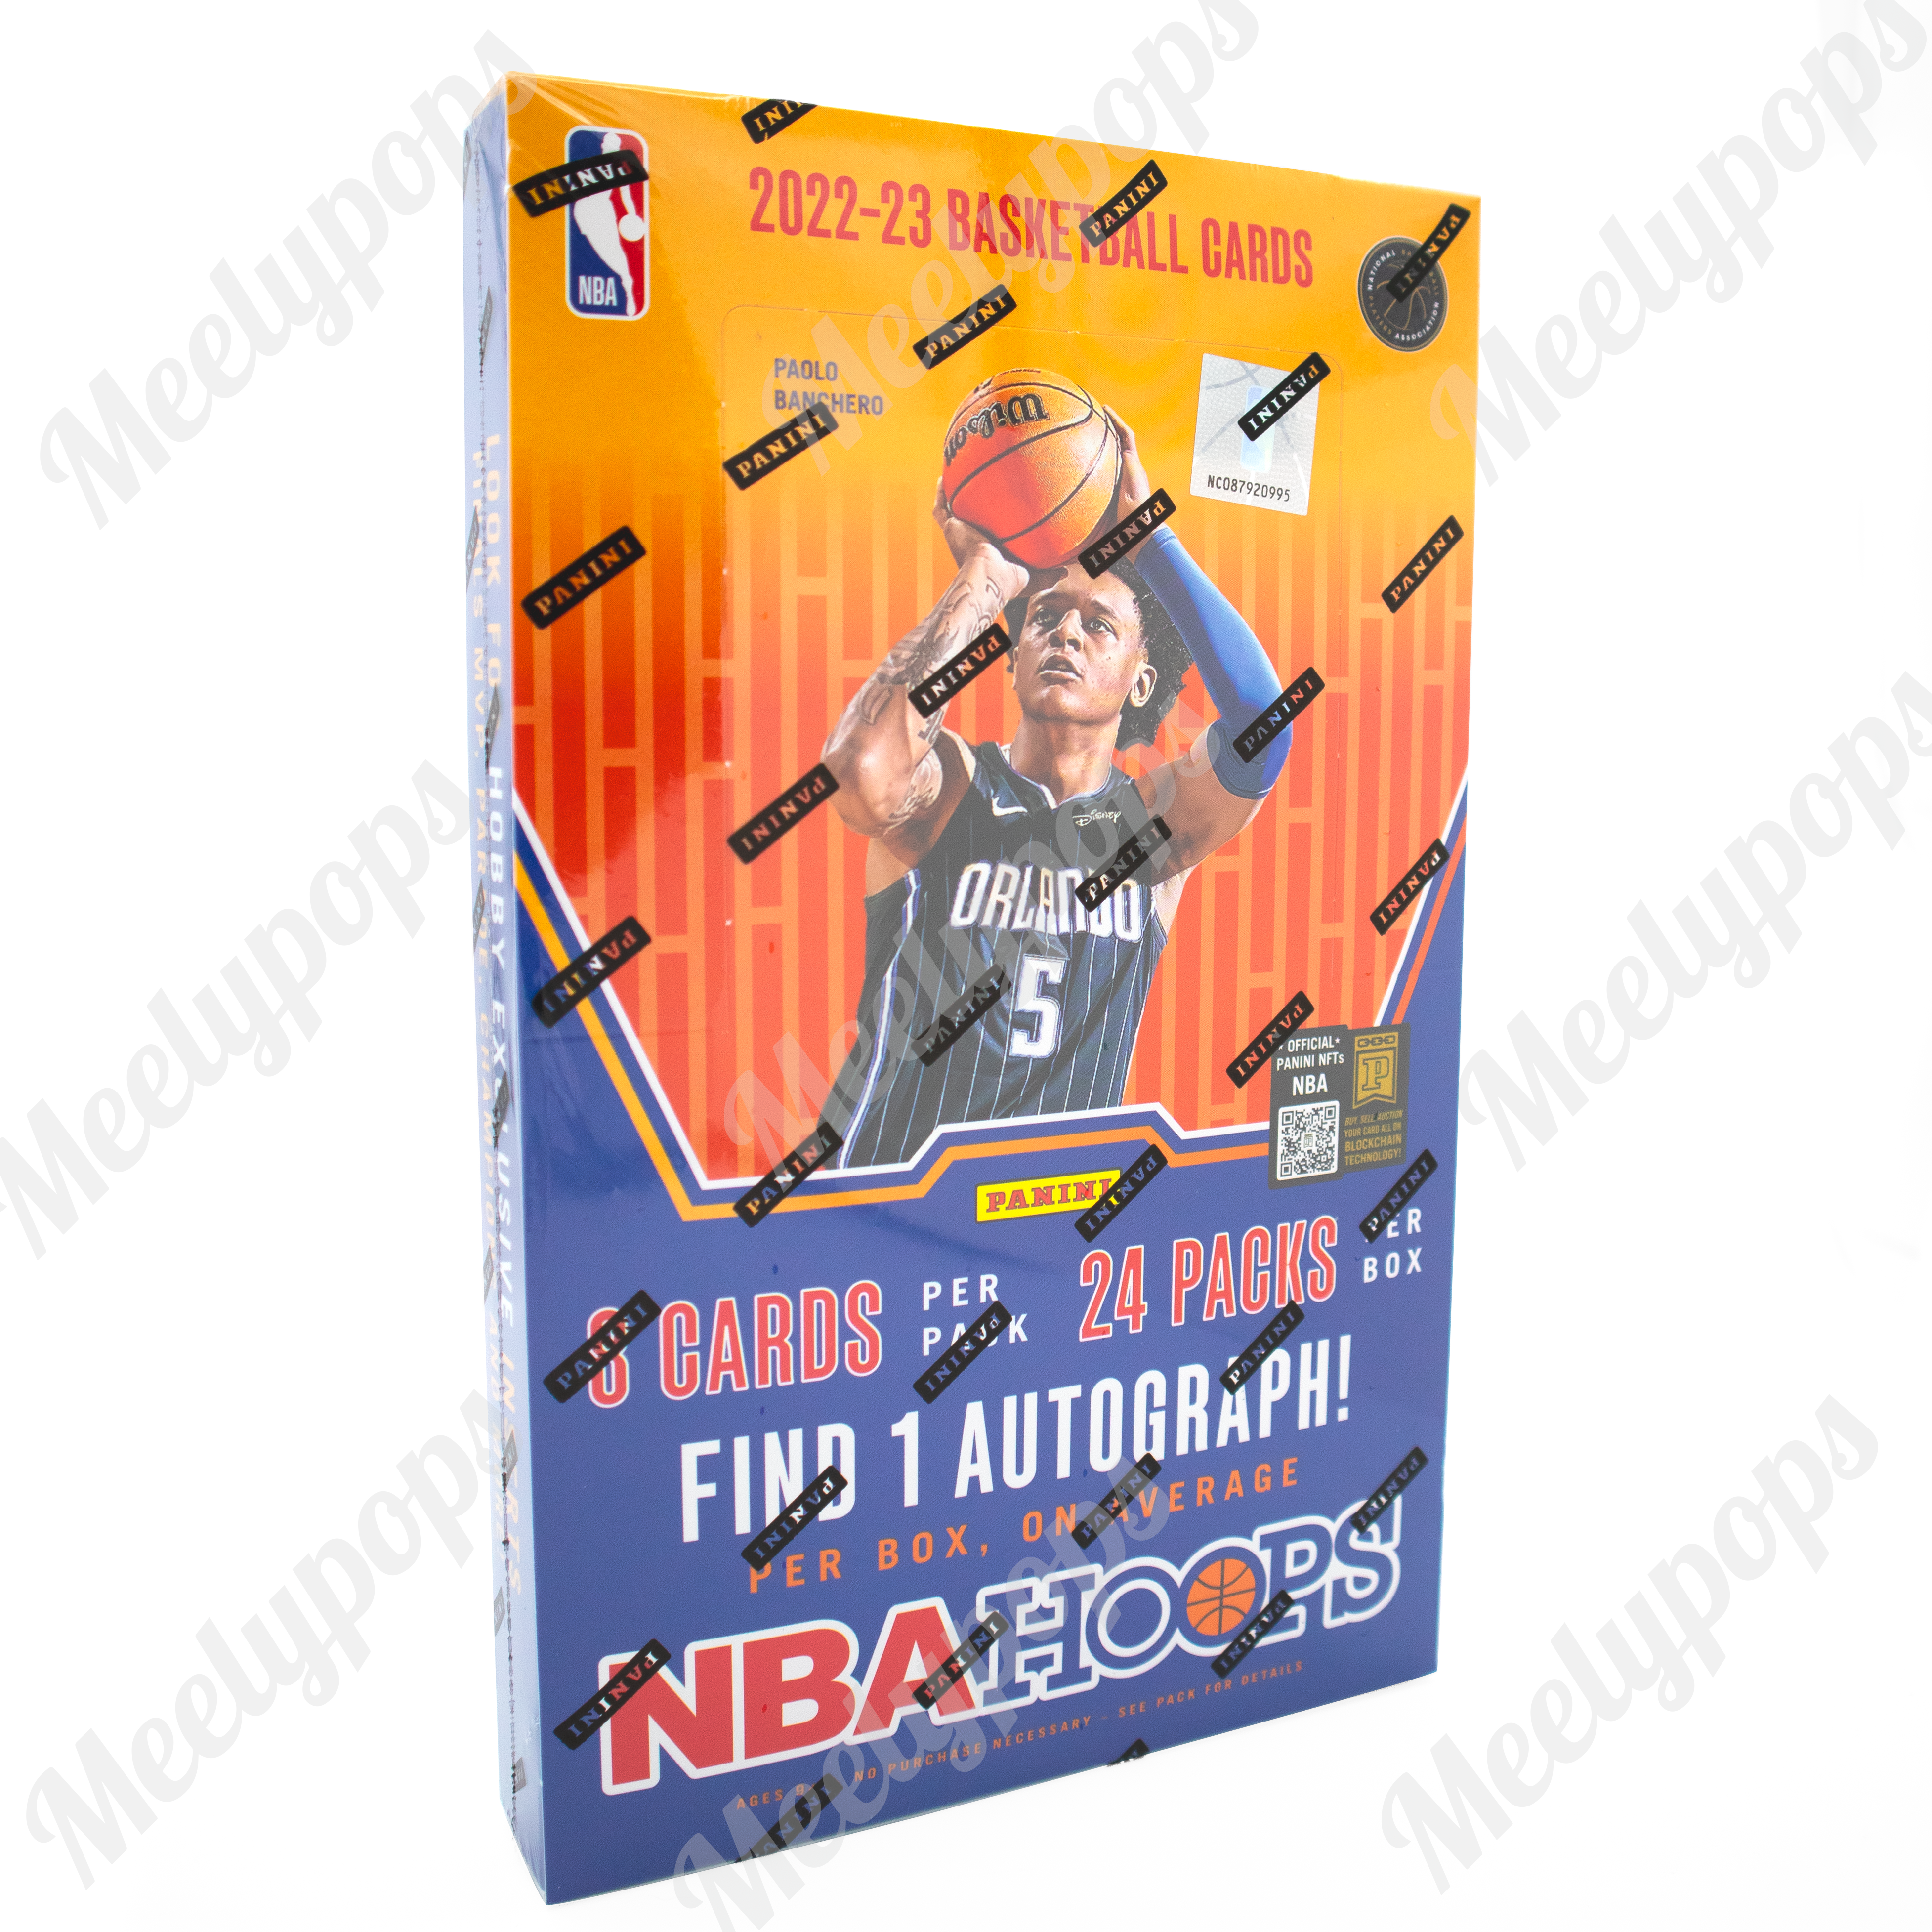 2022-23 NBA Hoops Premium Box Set Checklist Set Details, Boxes